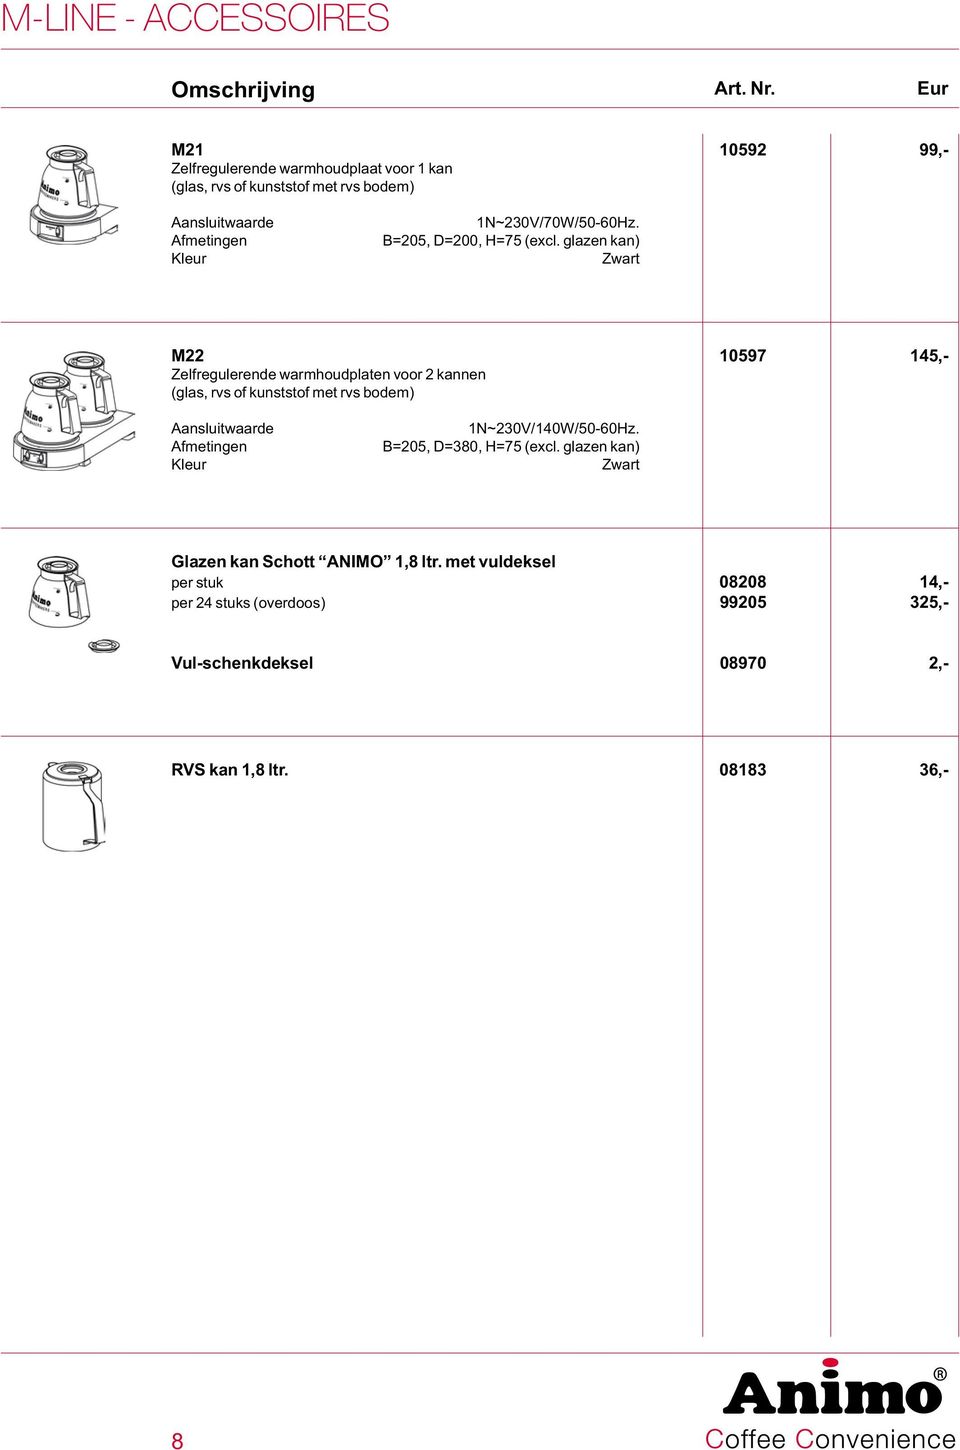 glazen kan) Zwart M22 10597 145,- Zelfregulerende warmhoudplaten voor 2 kannen (glas, rvs of kunststof met rvs bodem) Aansluitwaarde